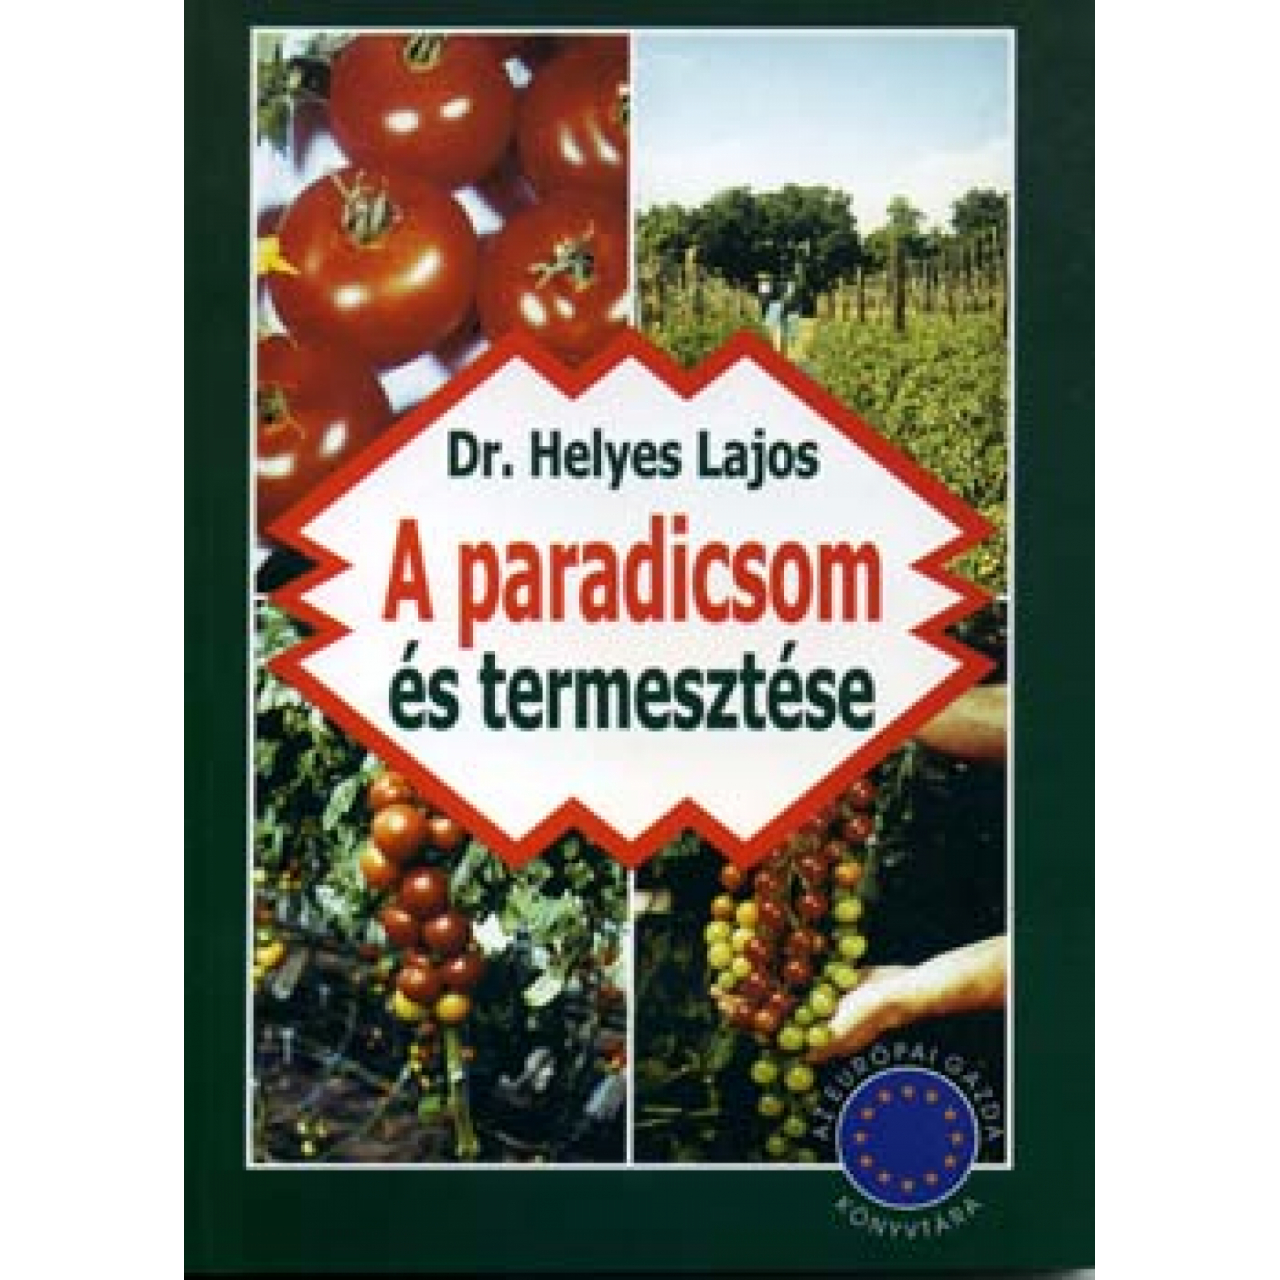 Dr. Helyes Lajos: A paradicsom termesztése